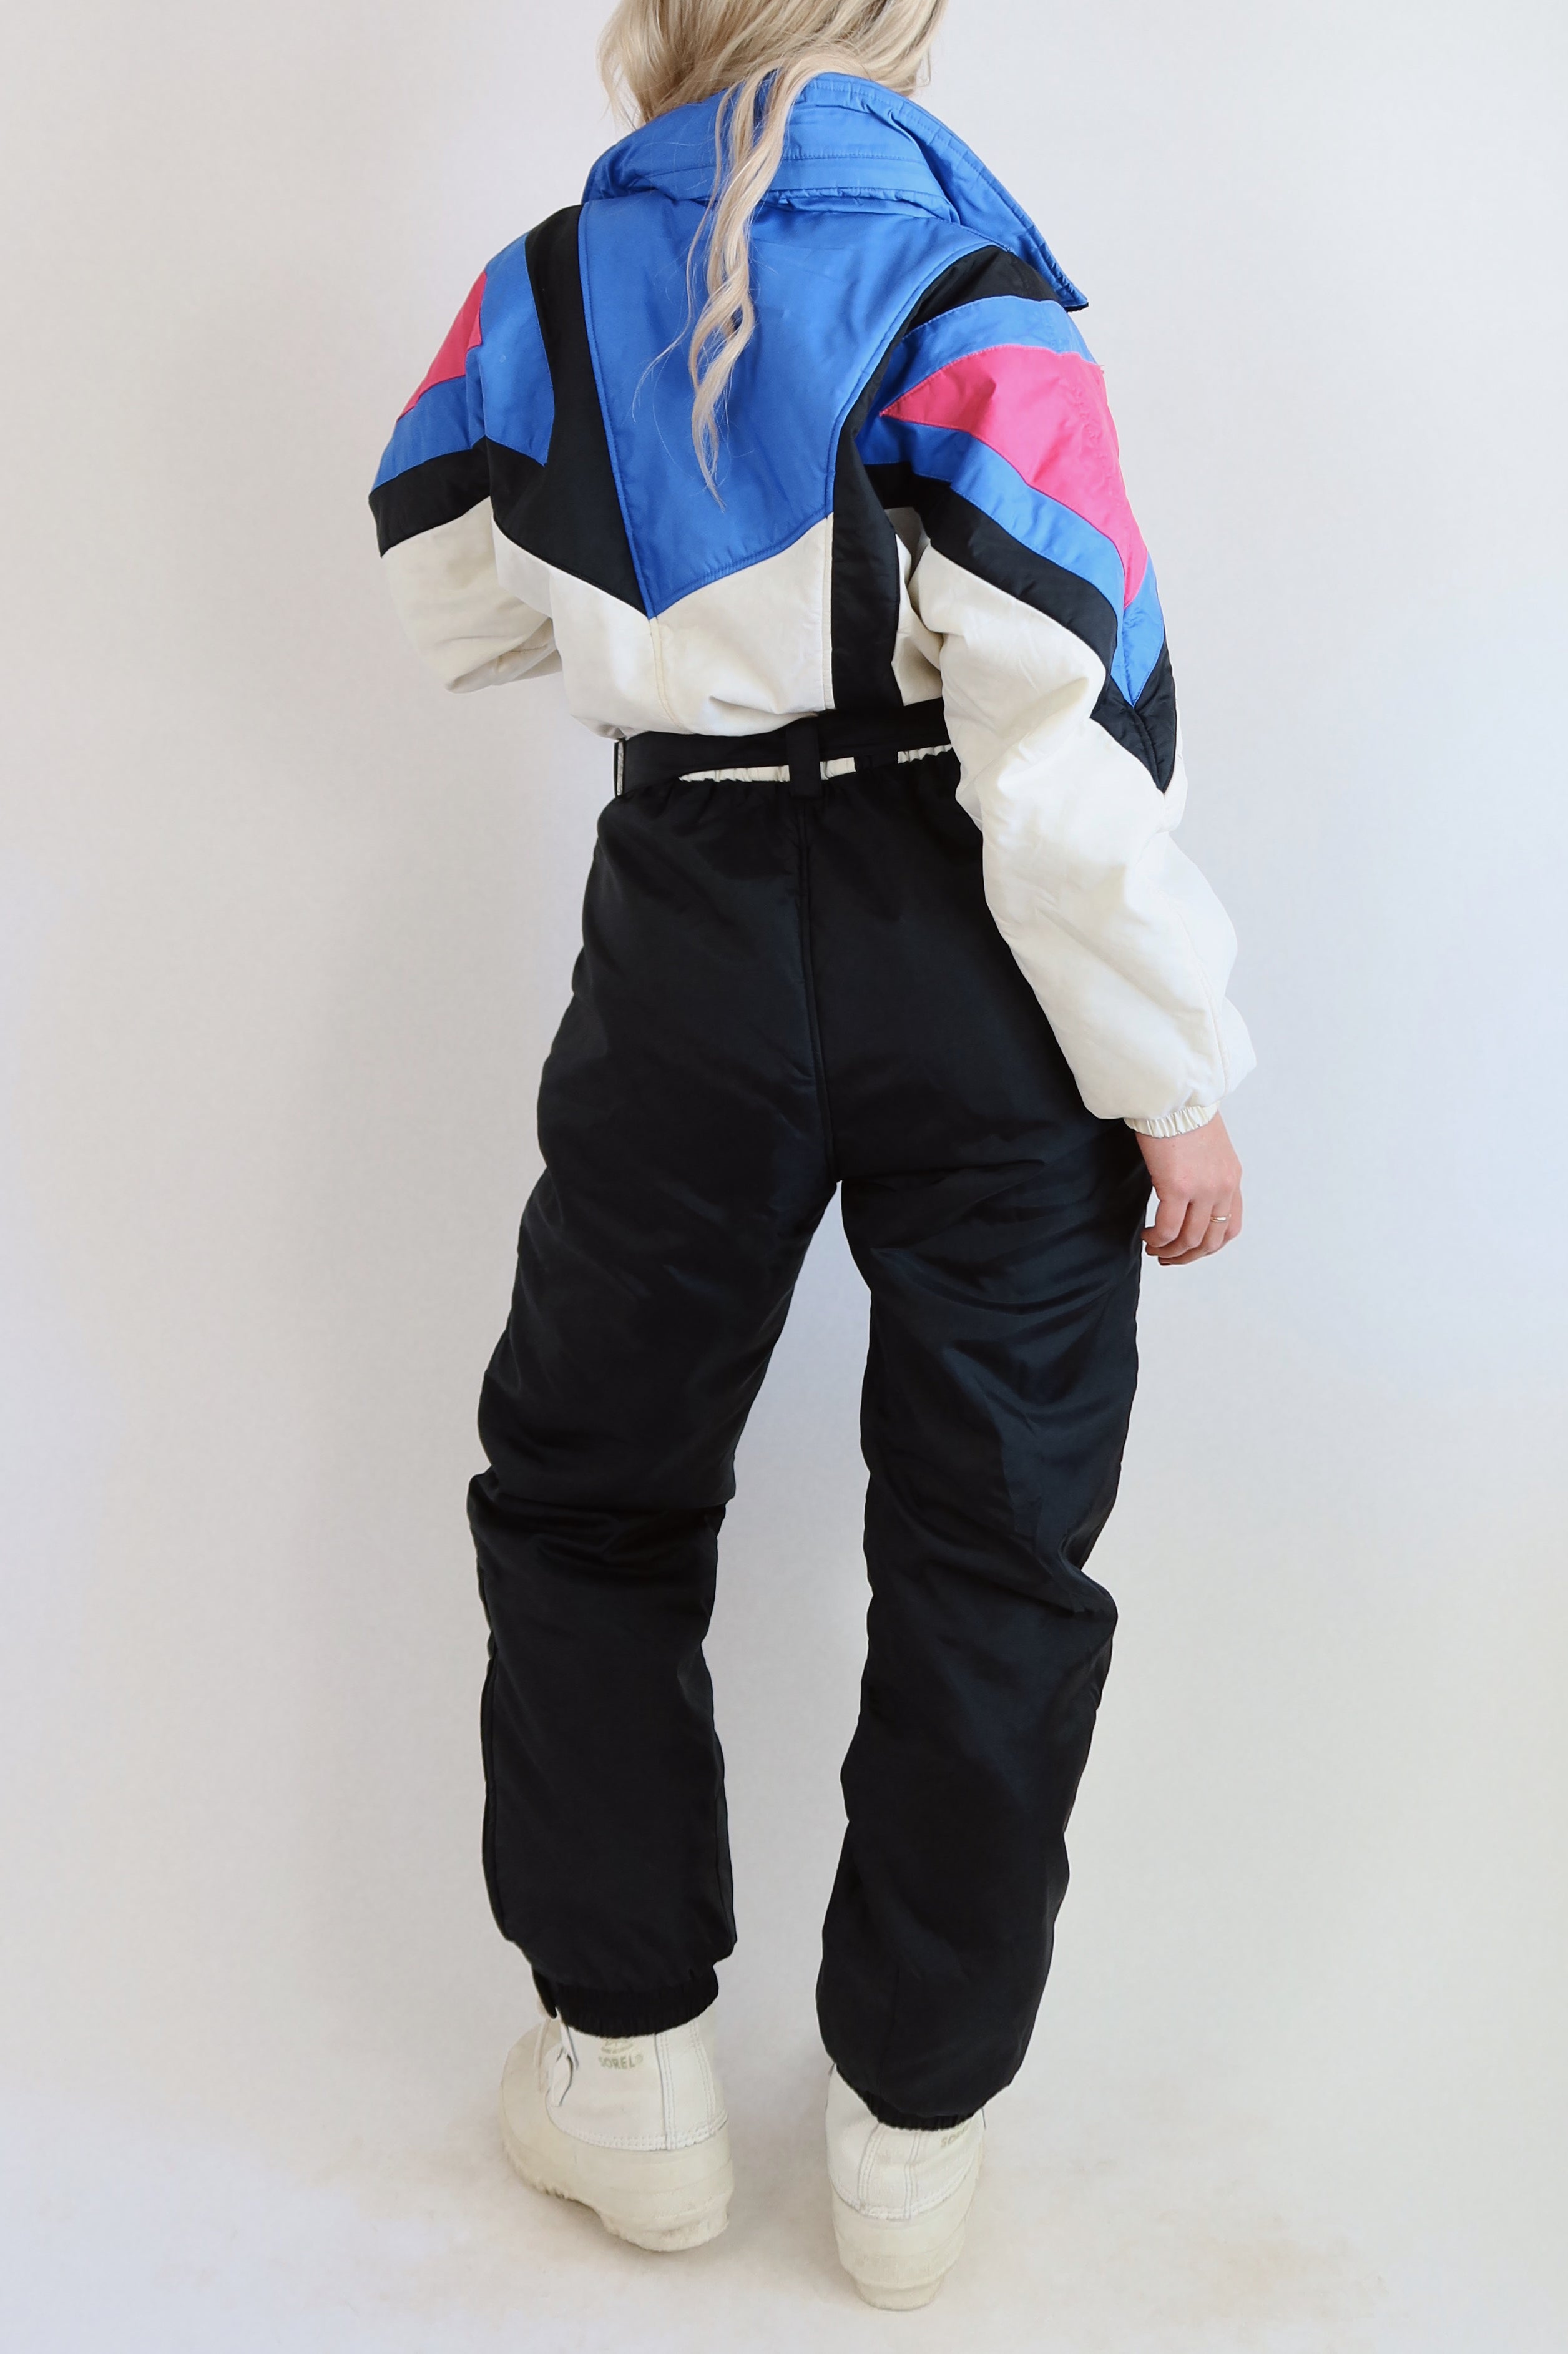 Vintage 80's Ski Suit